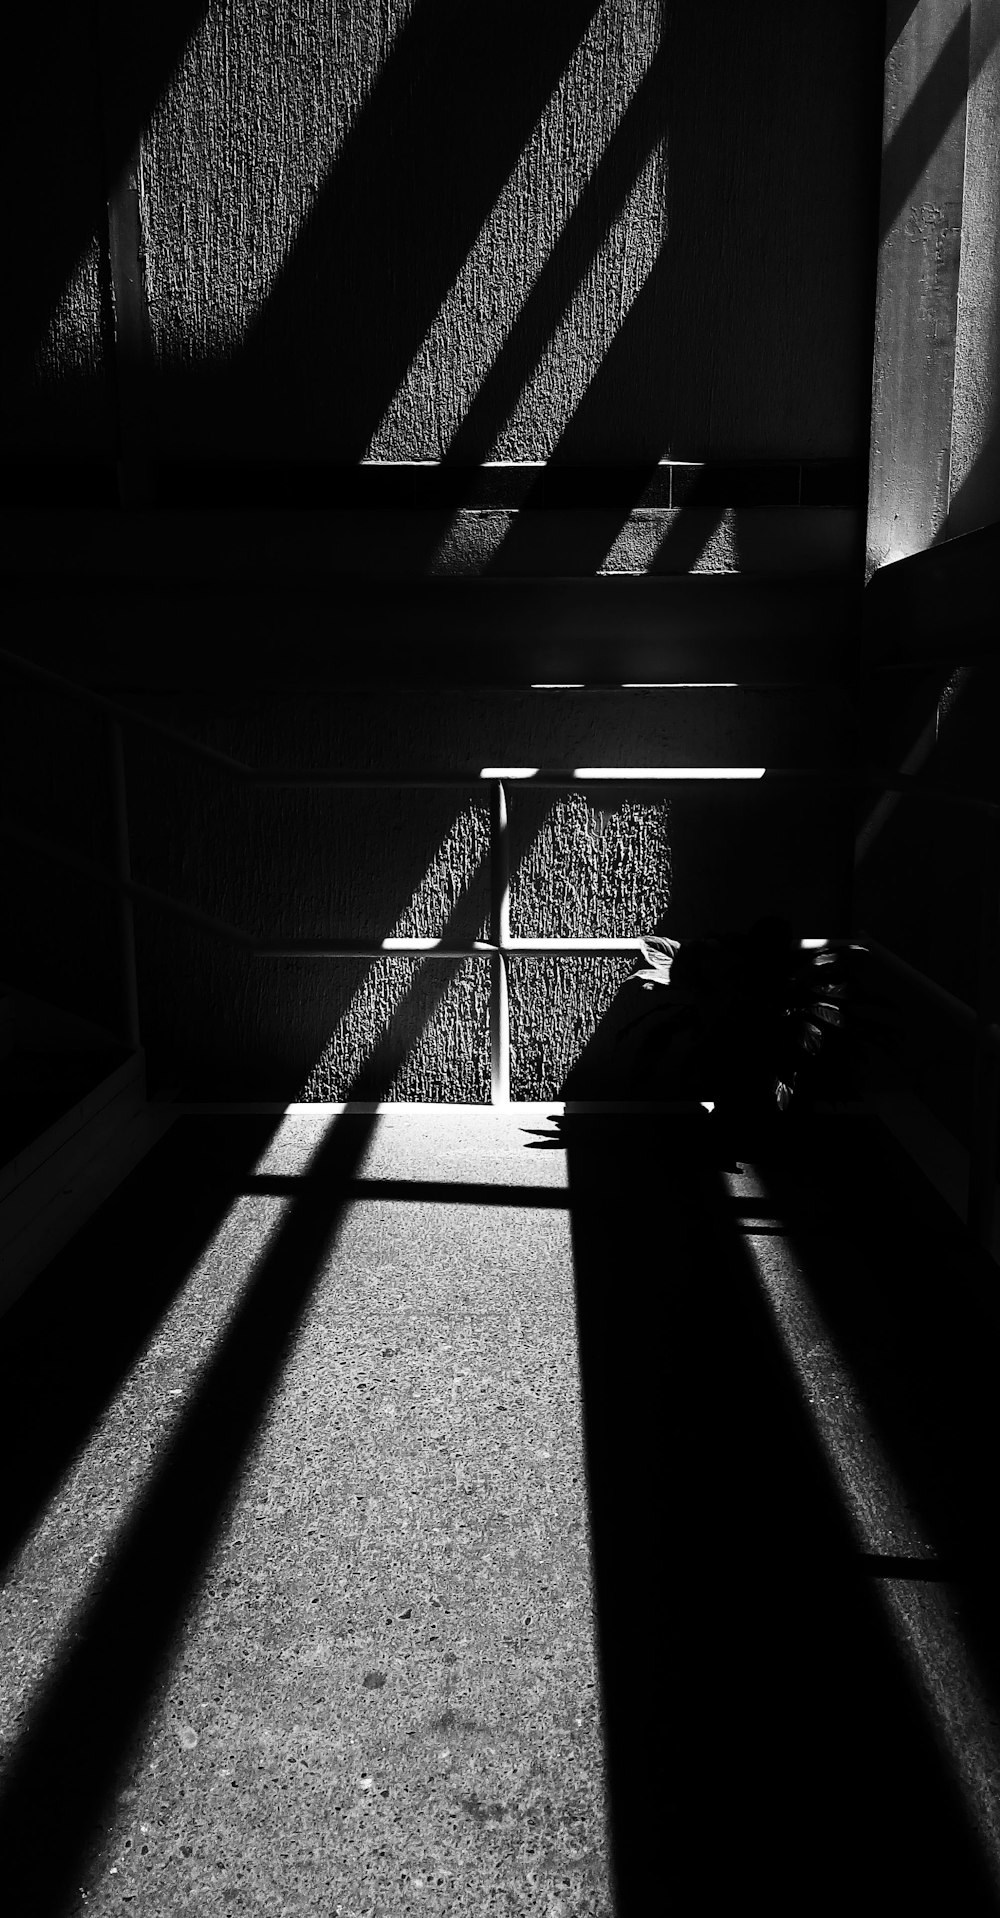 fotografia em tons de cinza de paredes com sombras